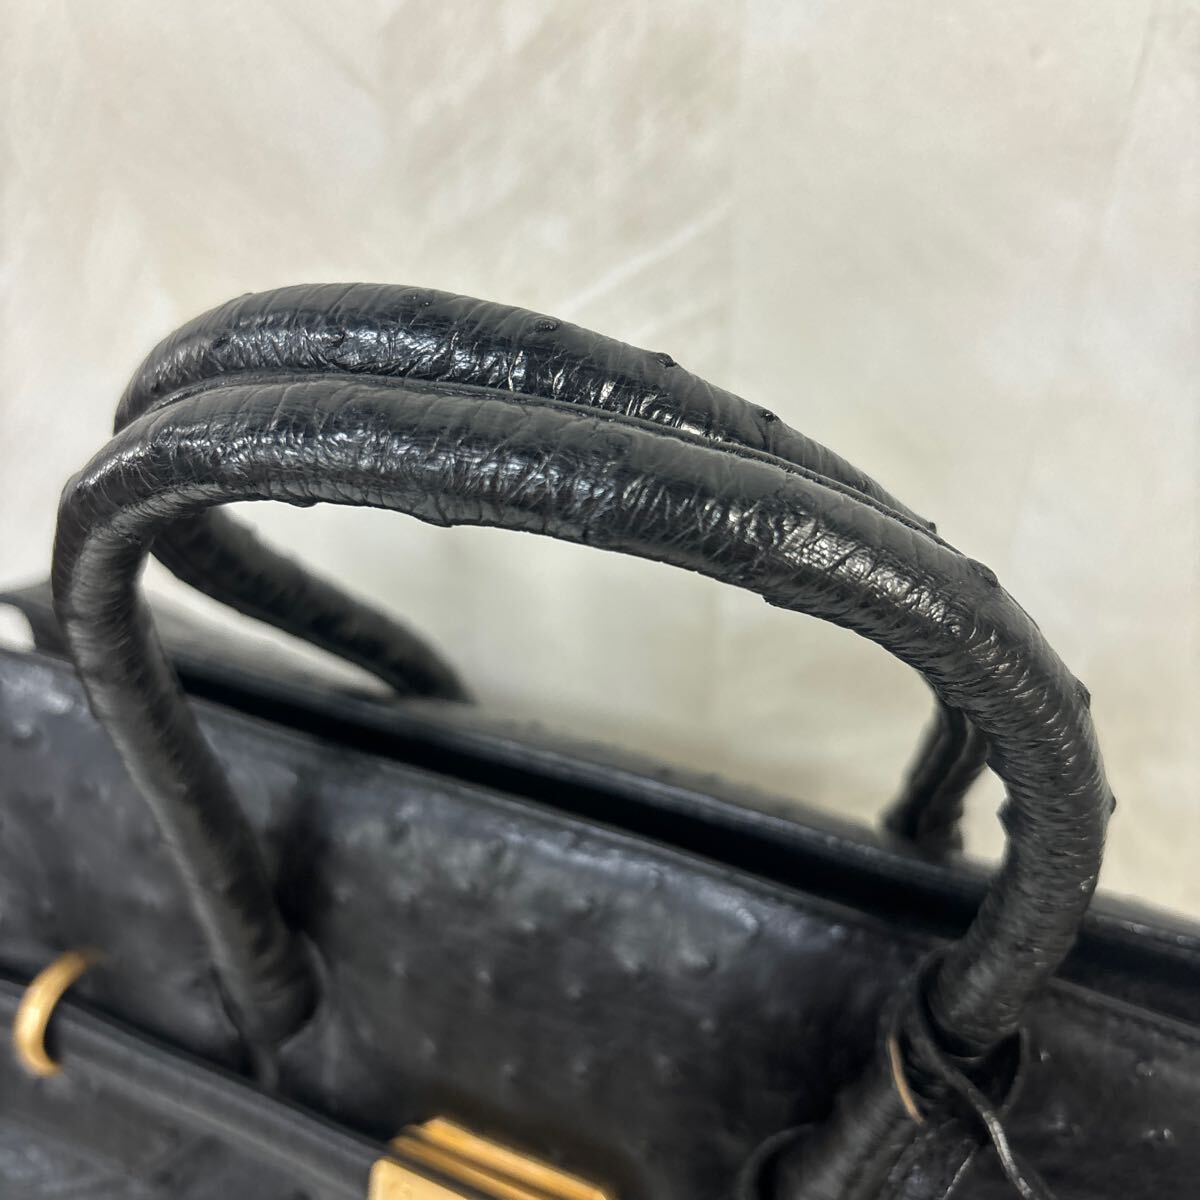 240419-オーストリッチ レザーバッグ ハンドバッグ ブラック 黒 南京錠 ゴールド金具 レディース 鞄の画像2